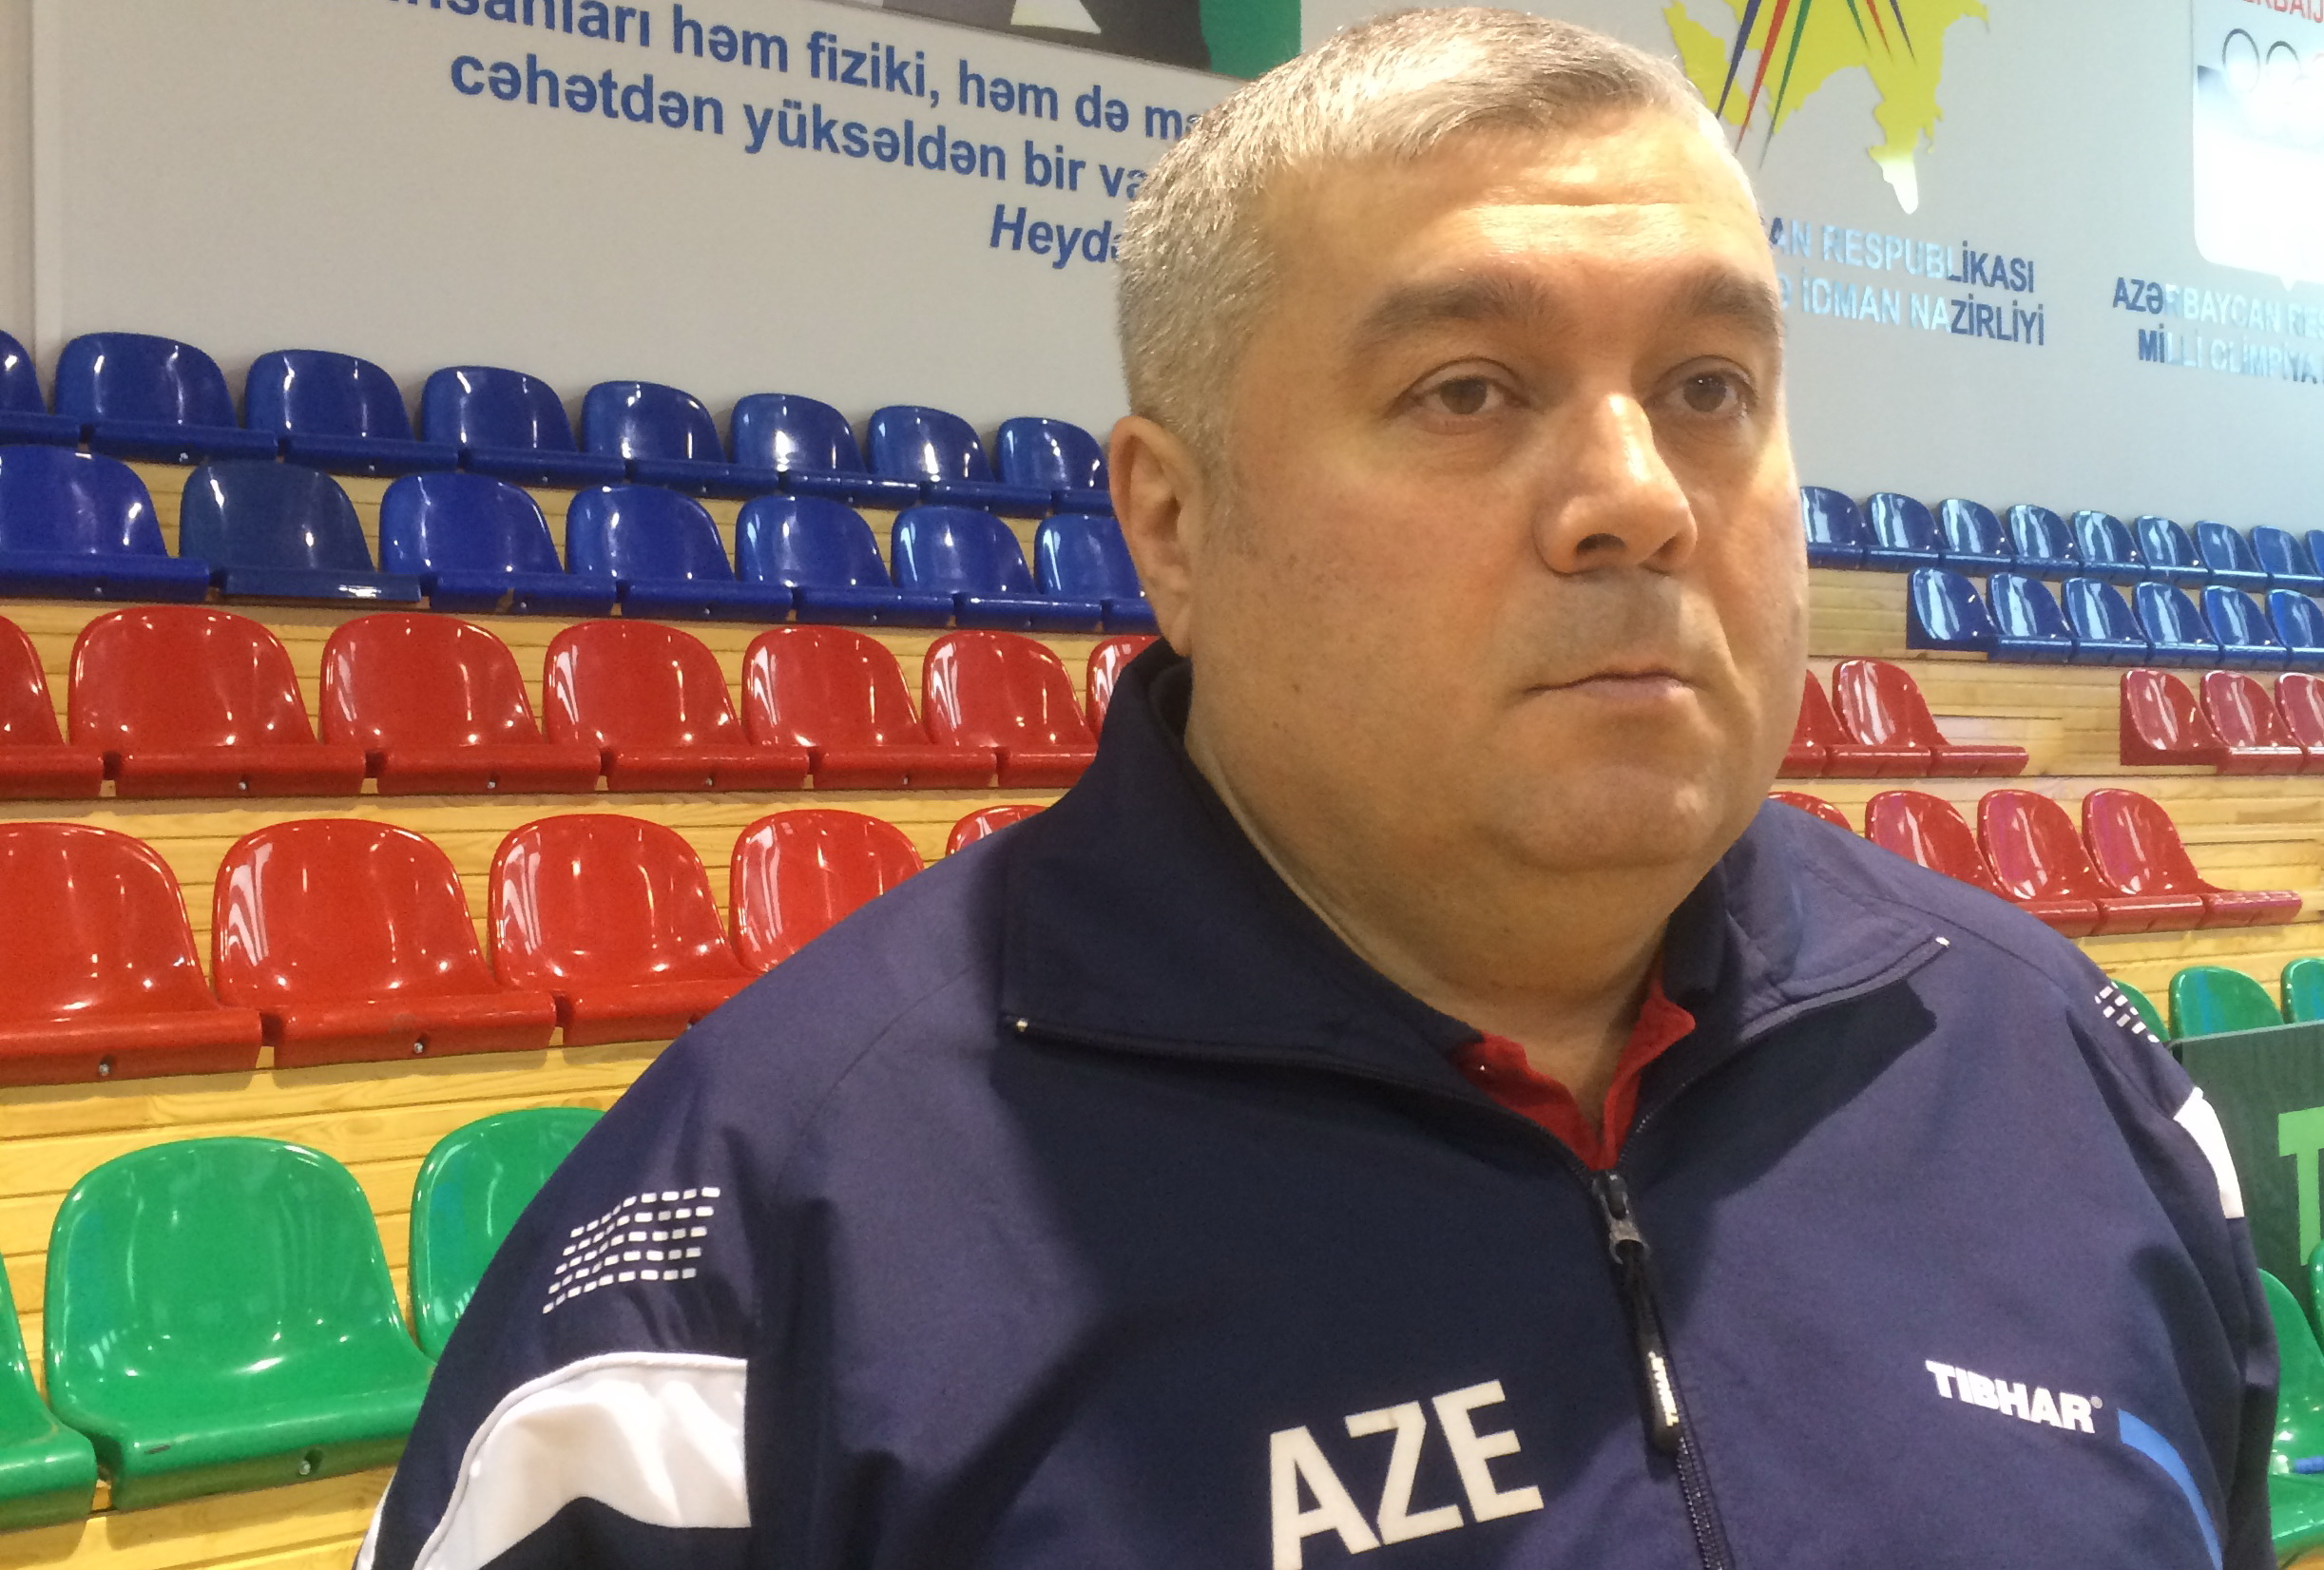 Главный тренер сборной Азербайджана по настольному теннису Александр Зудов: «Мы развиваемся завидными темпами»